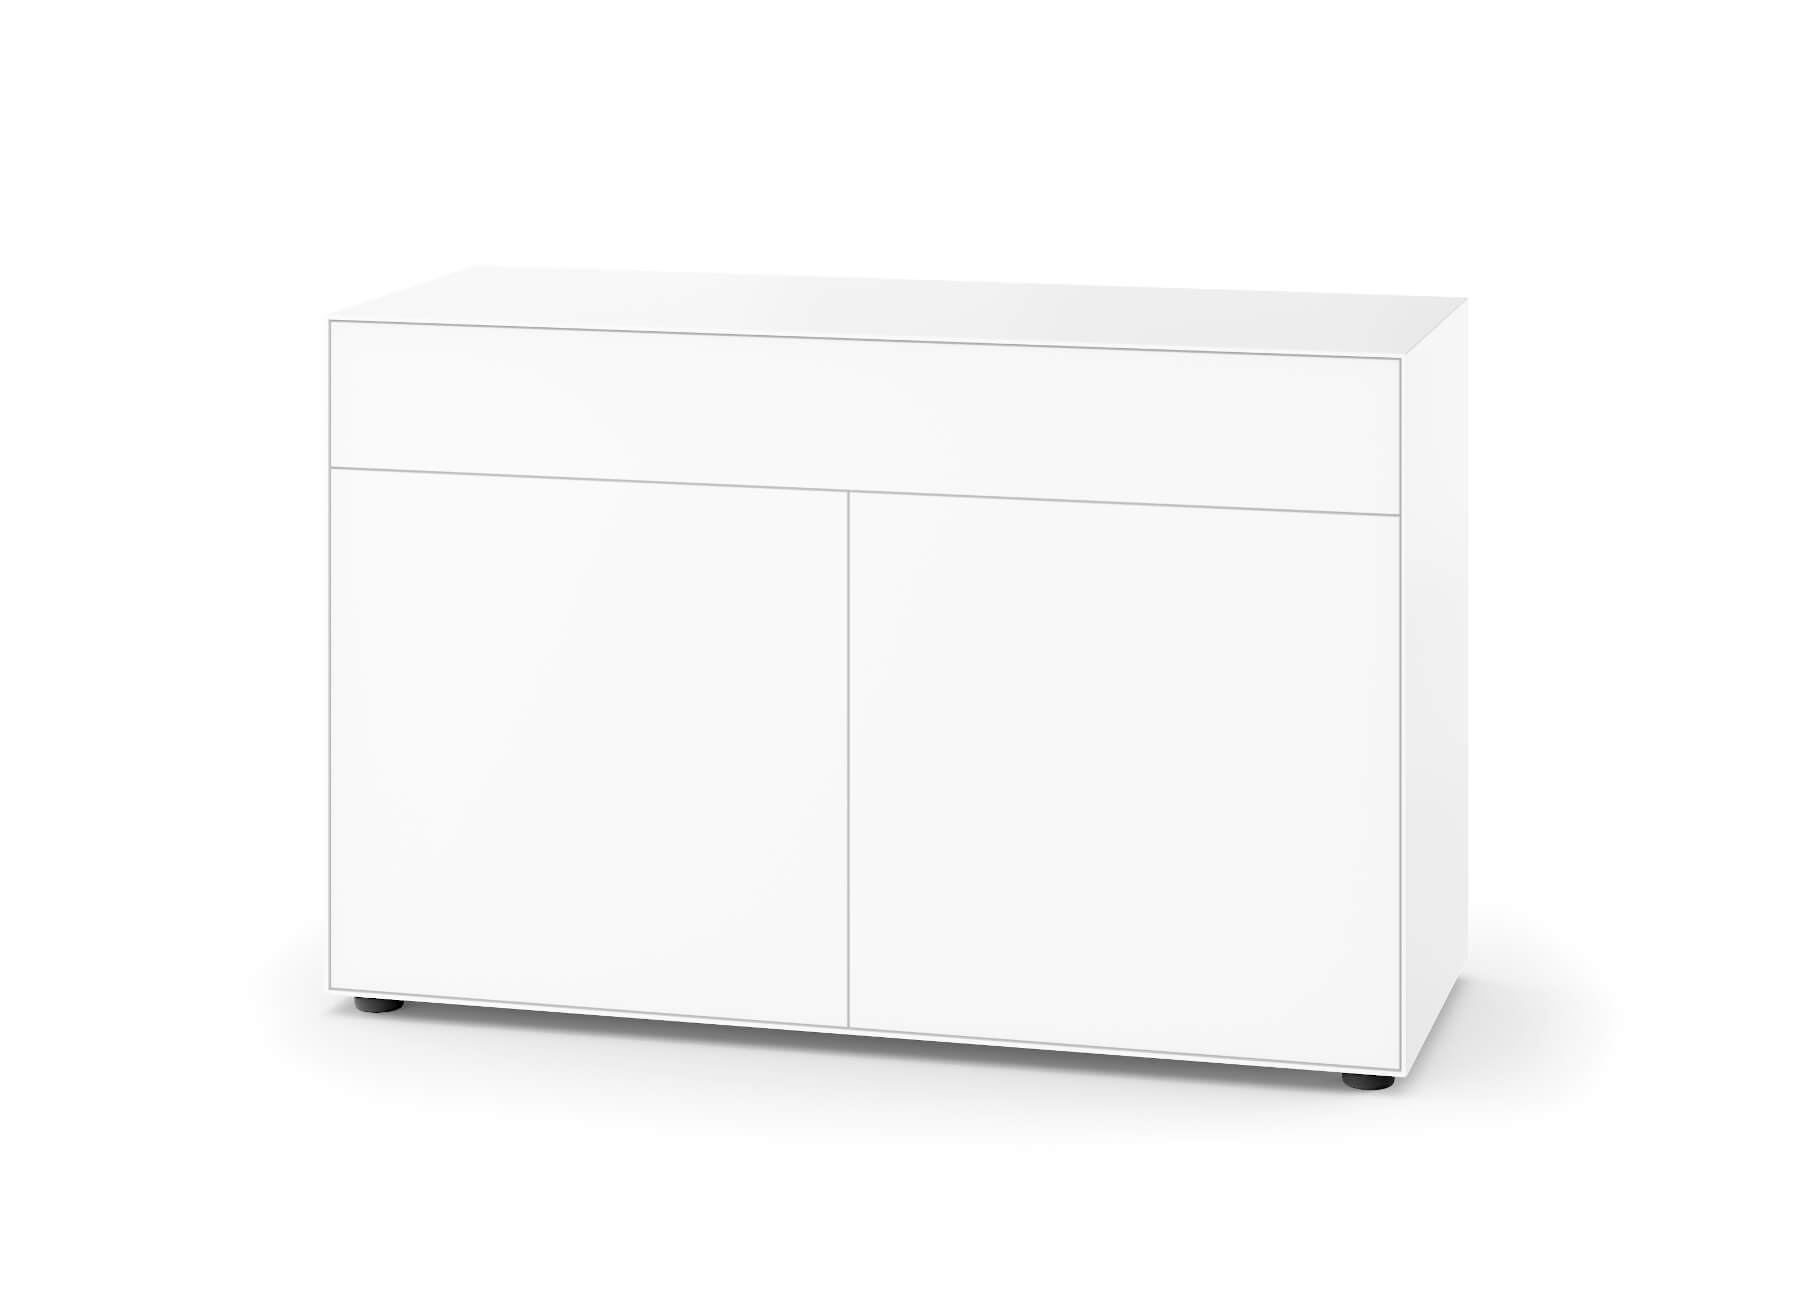 Nex Pur Box Doppeltür + Schubkasten, 75 x 120 cm, weiß